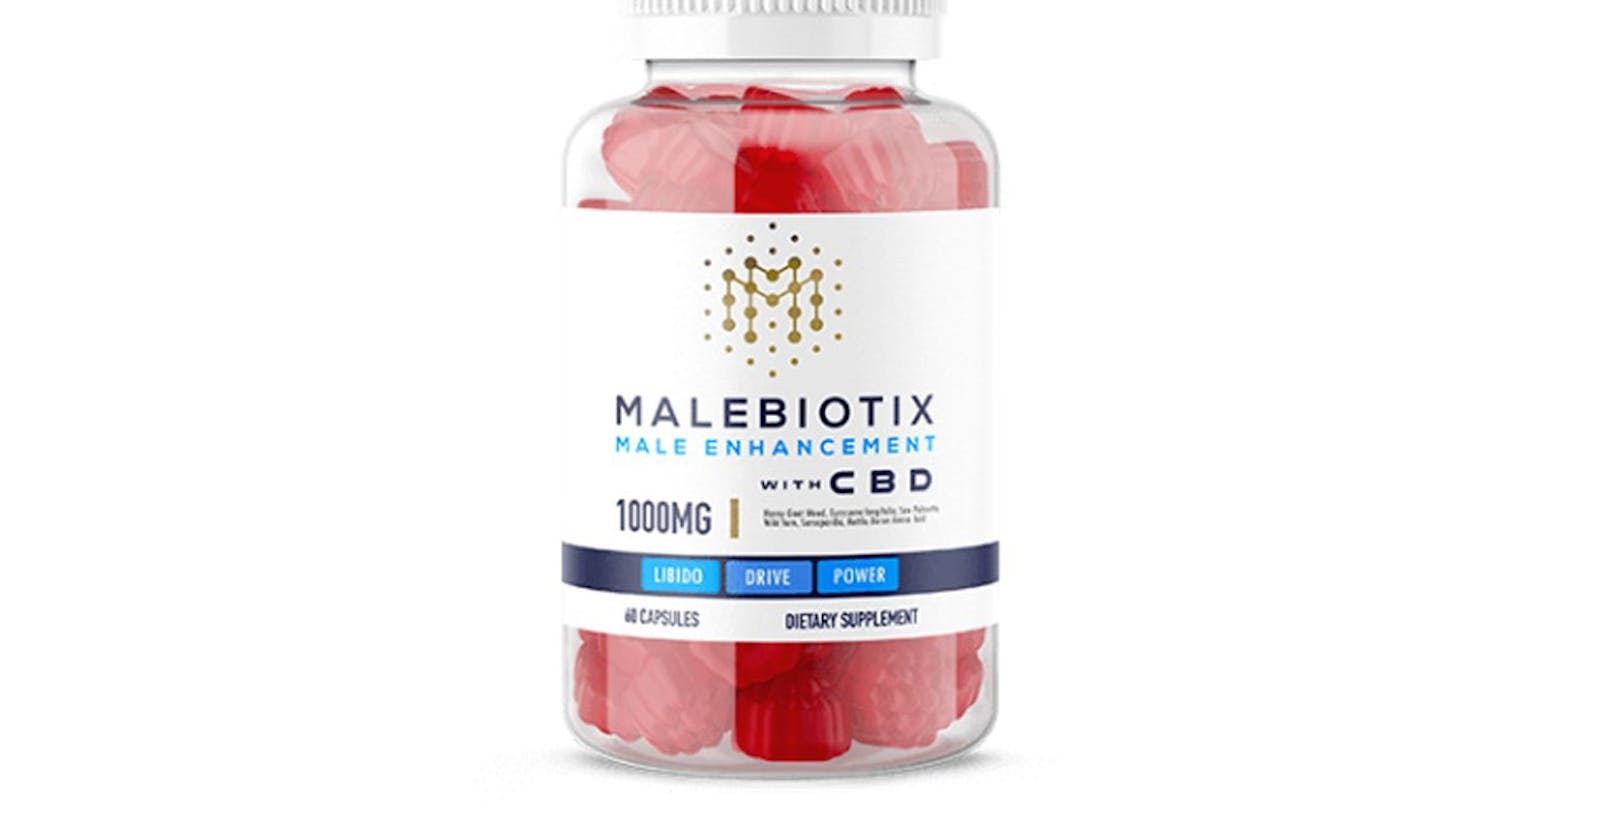 Male Biotix CBD Gummies Reviews